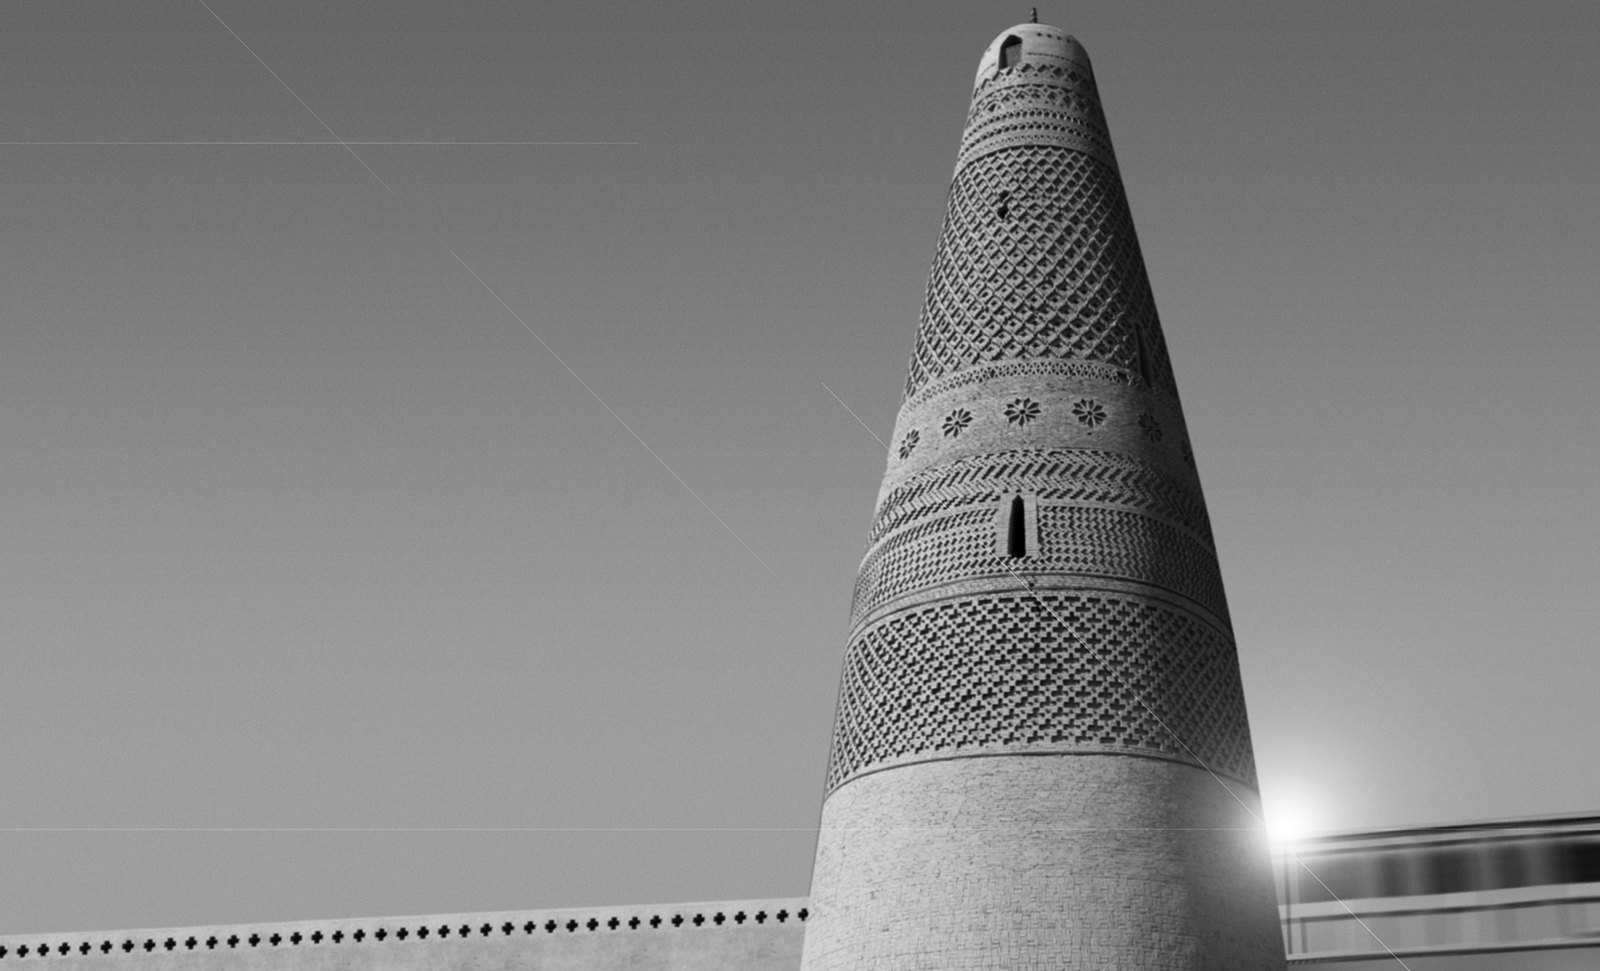 Torres legendarias / Faros, minaretes, campanarios, rascacielos